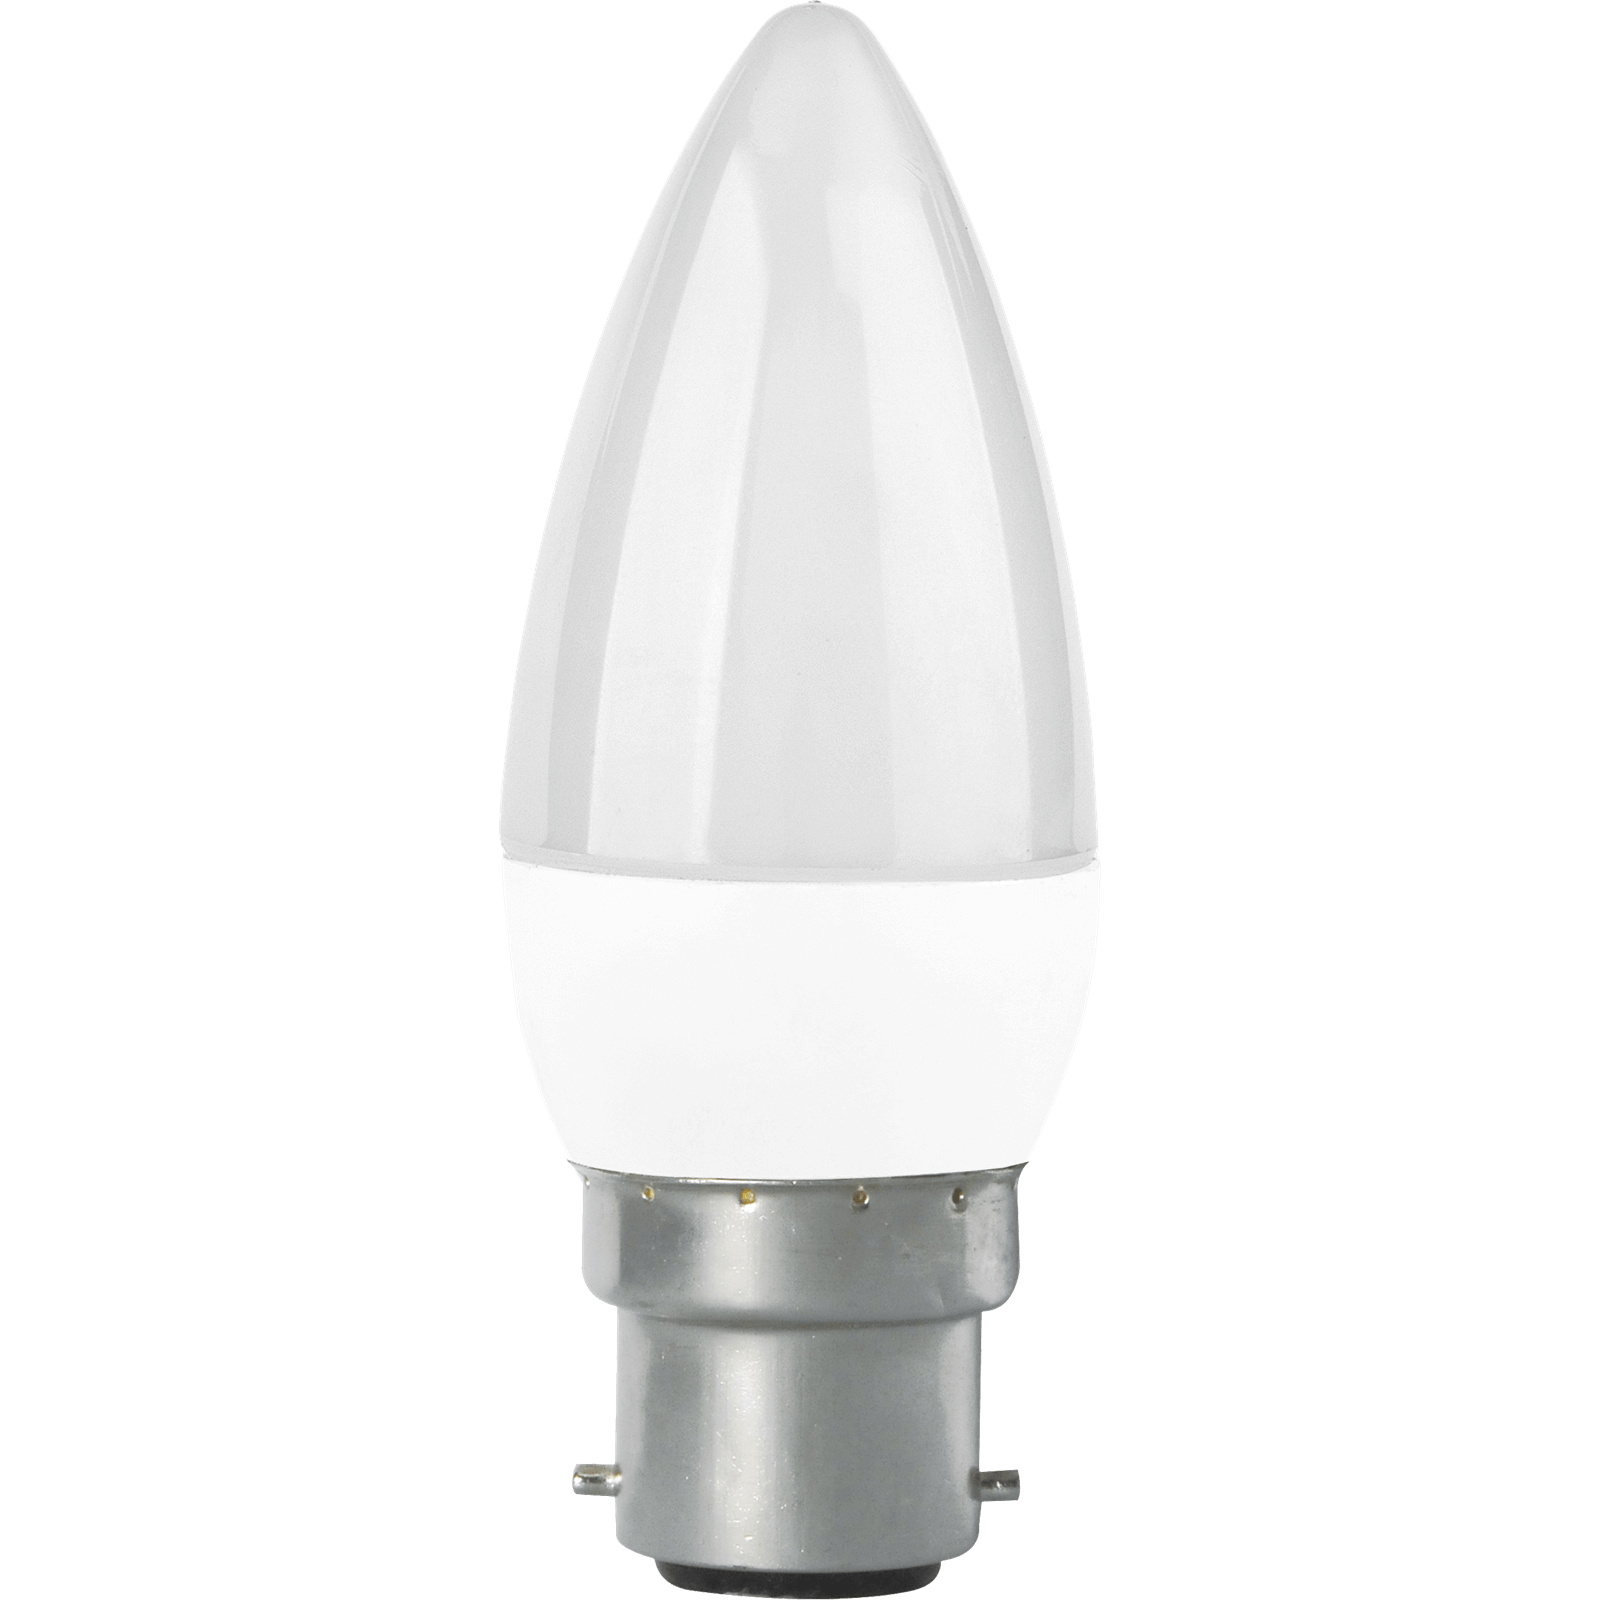 TCP LED Candle 40W BC Warm Light Bulb - 5 pack